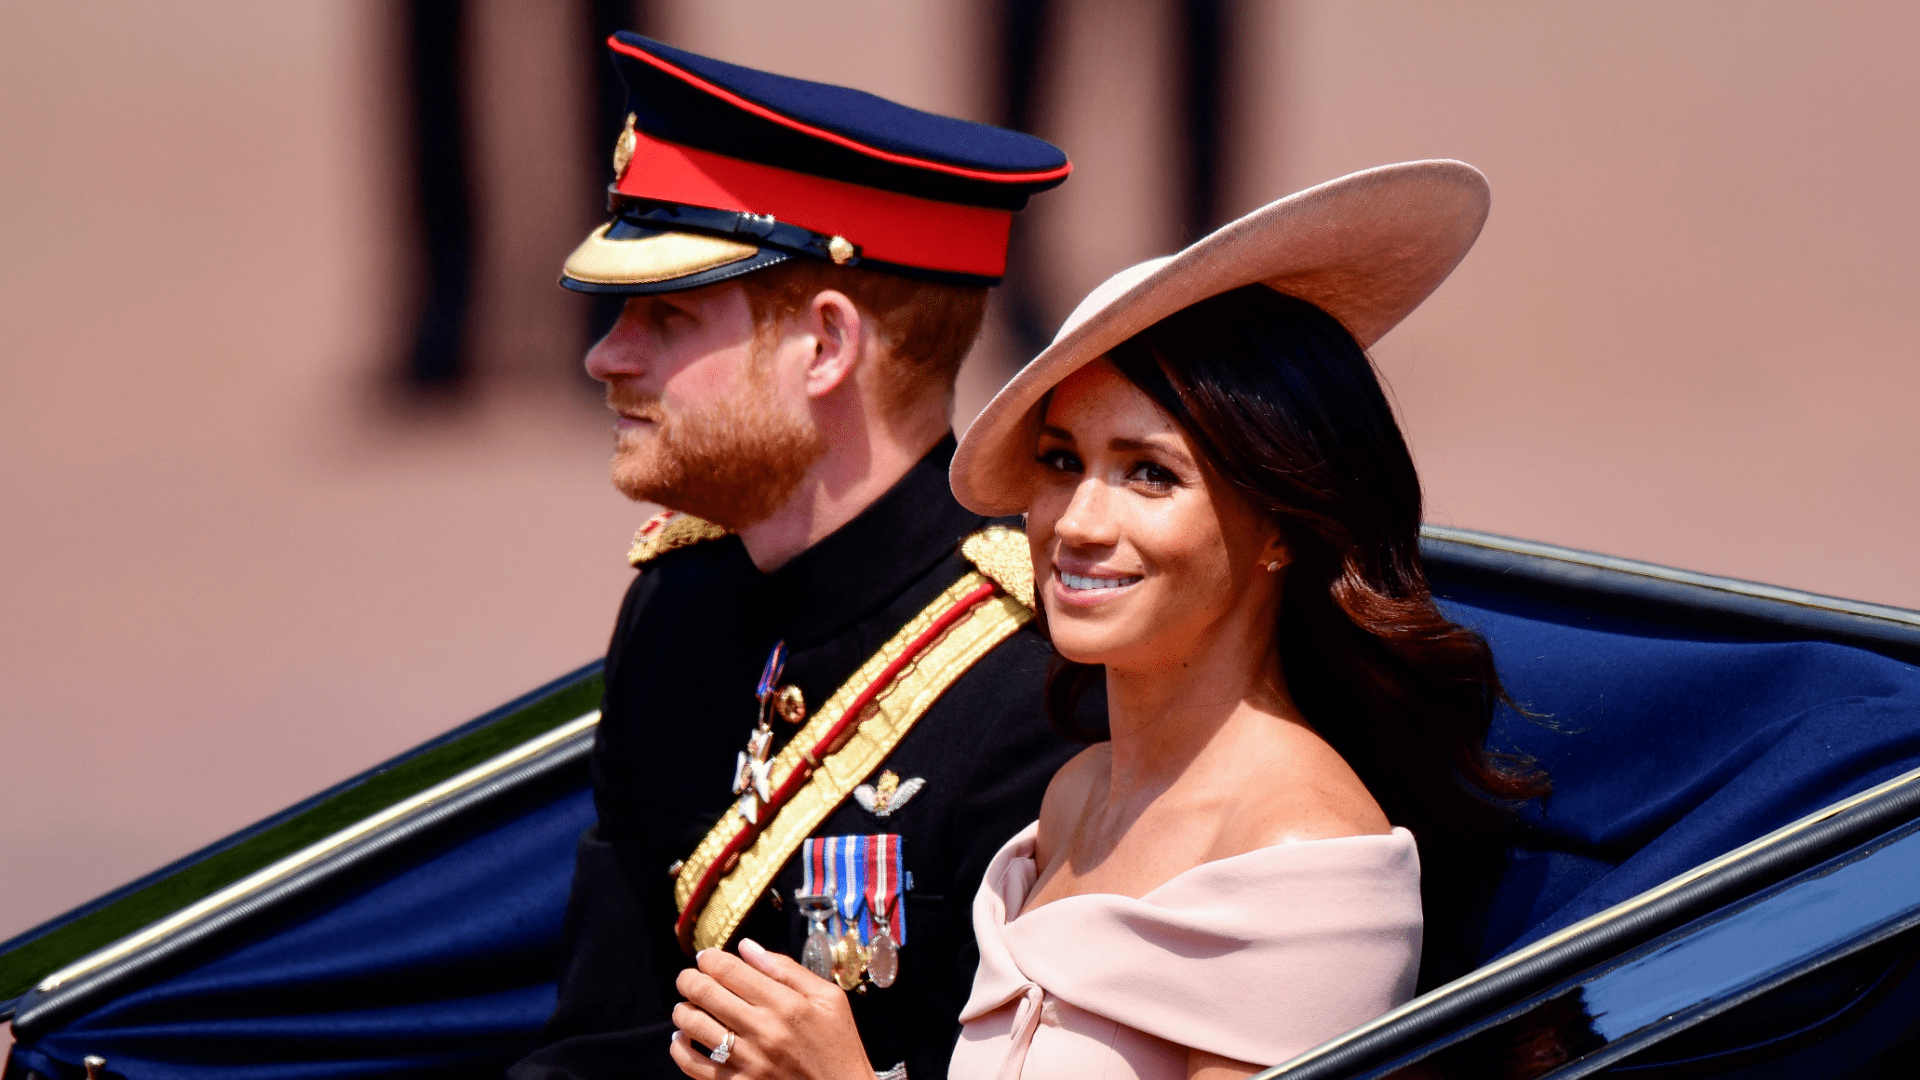 Meghan Markle és Harry herceg megérkezik a Buckingham-palotához a 2019-es Trooping the Colour katonai parádén (Fotó: James Devaney/FilmMagic/Getty Images)